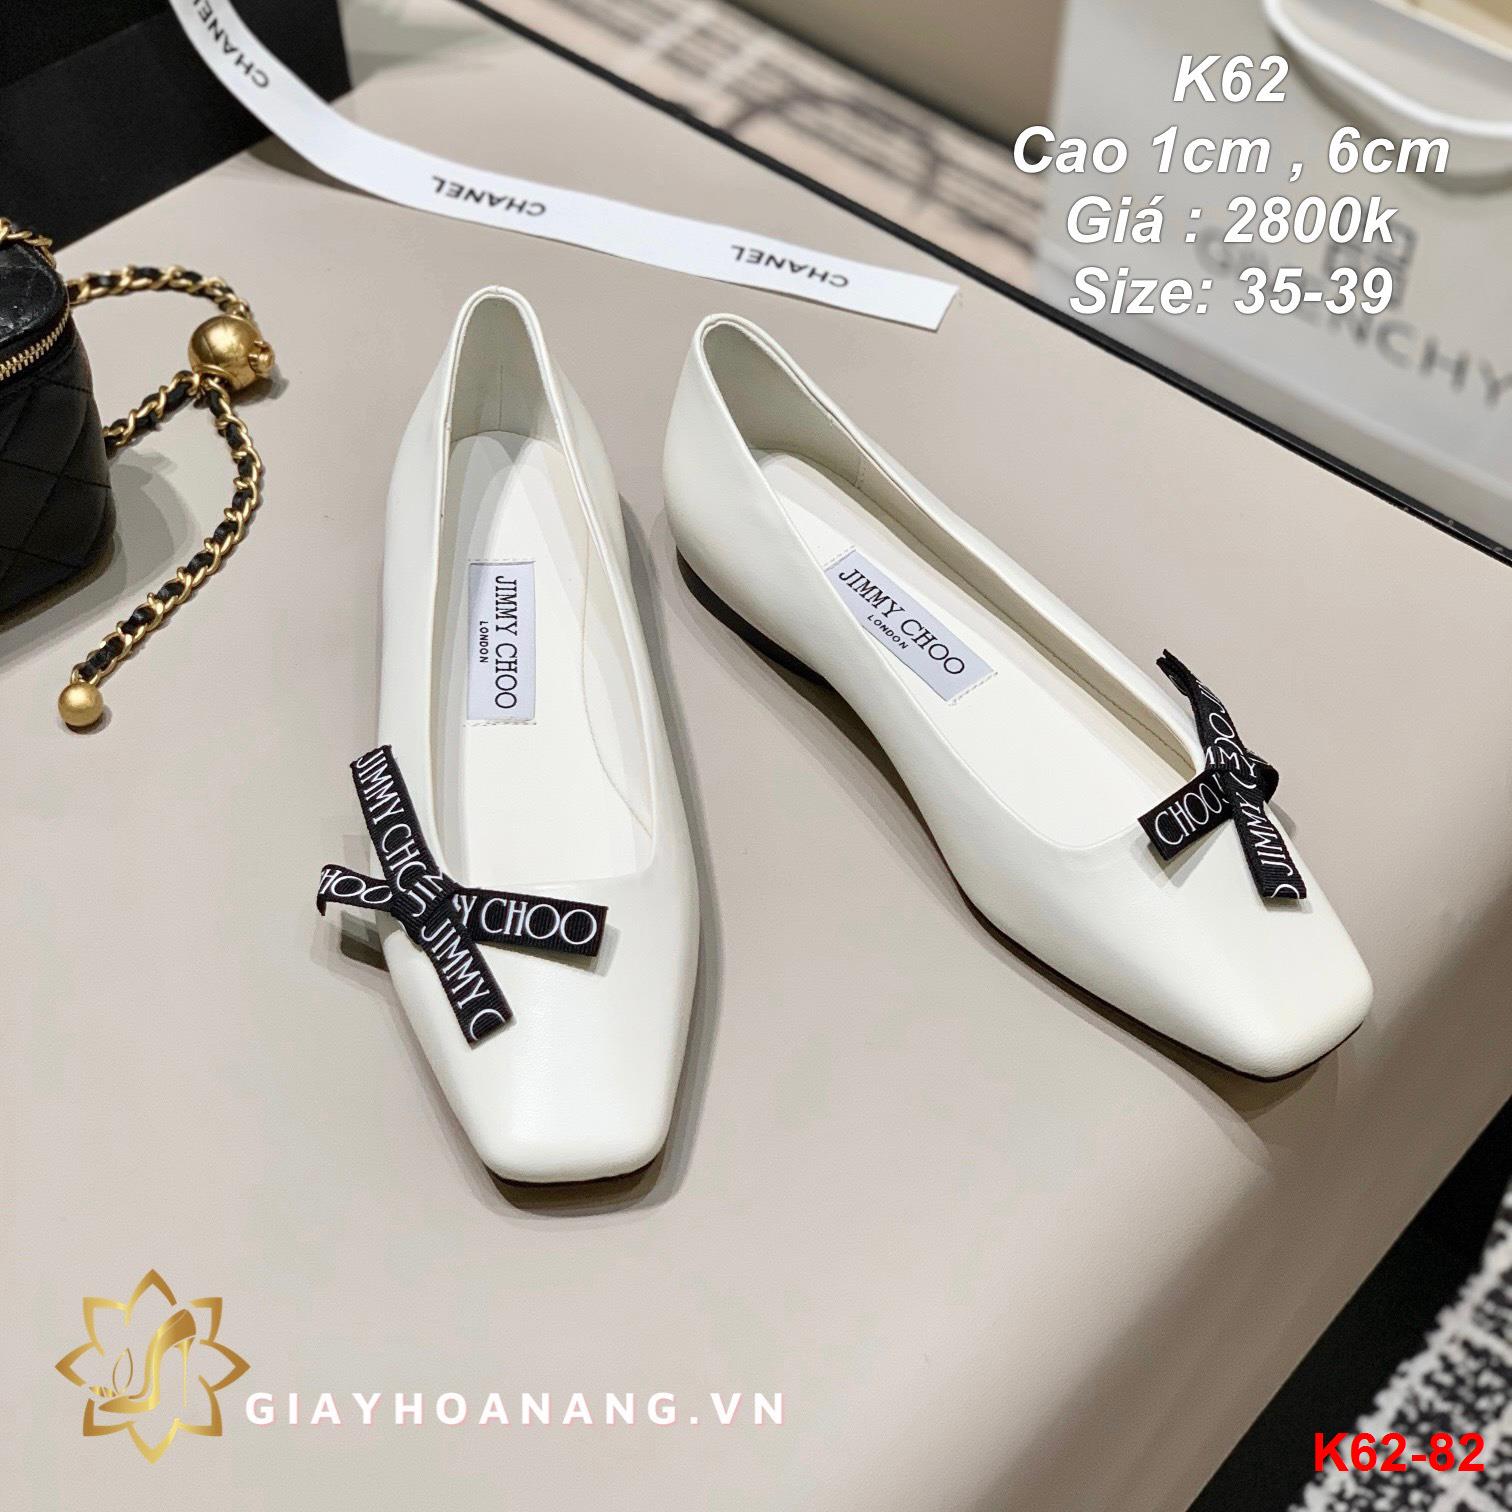 K62-82 Jimmy Choo giày cao 1cm , 6cm siêu cấp